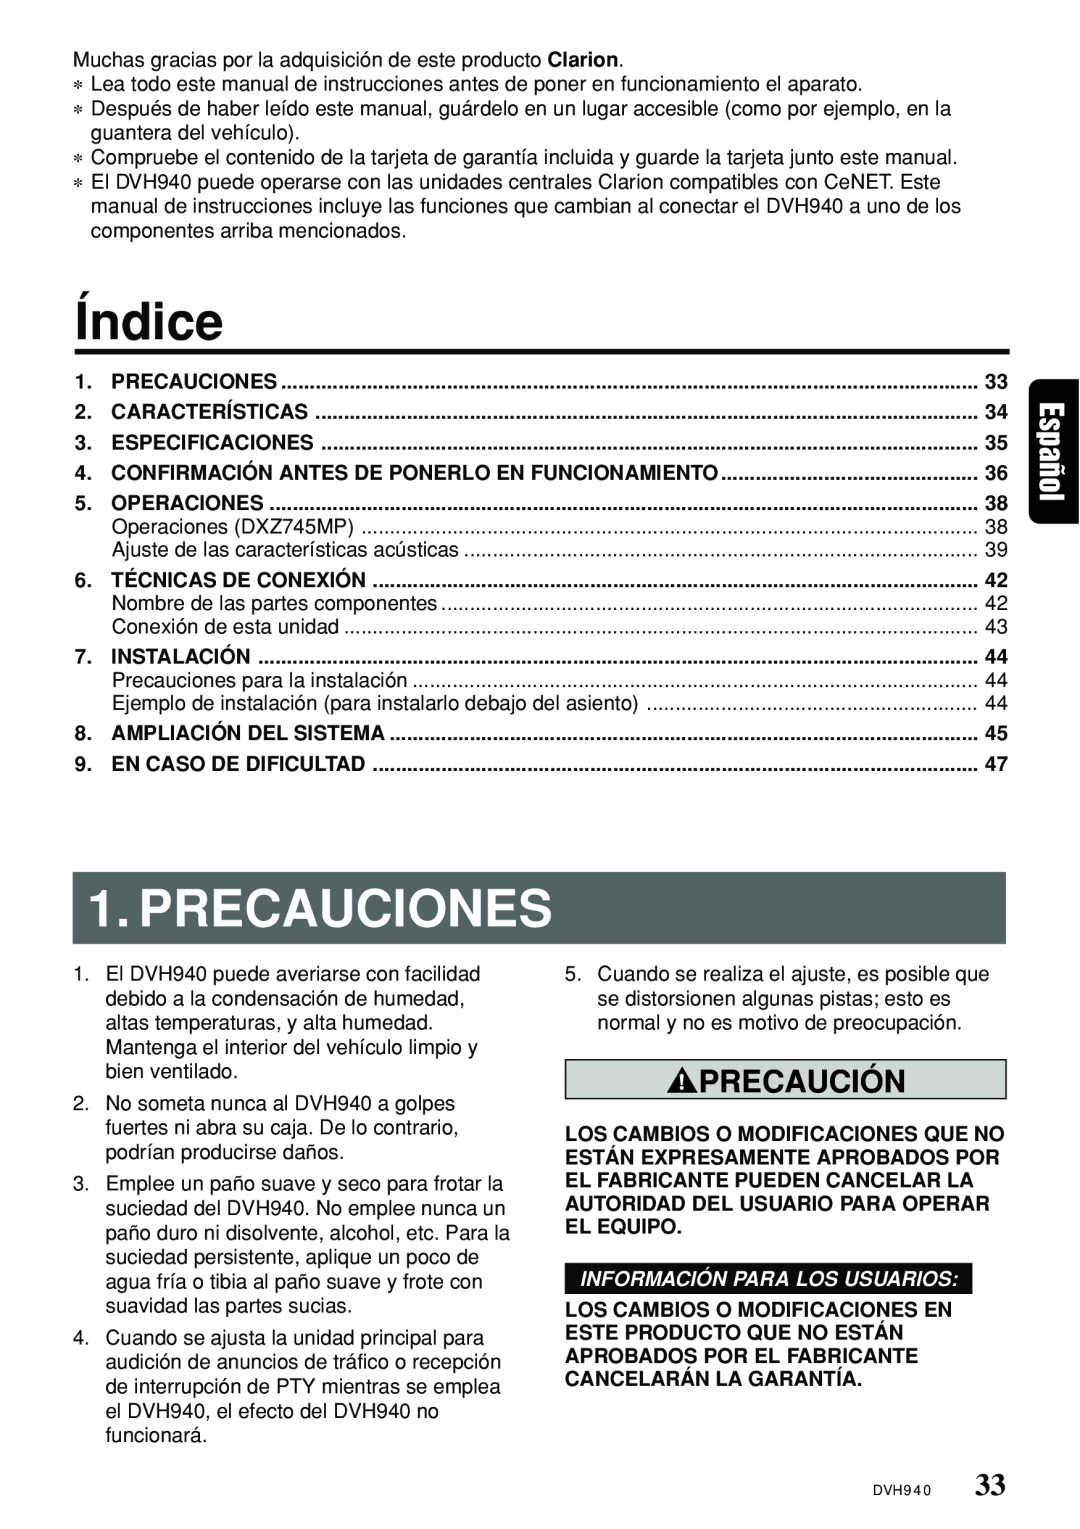 Clarion DVH940N owner manual Índice, Precauciones, Precaución, Información Para Los Usuarios 